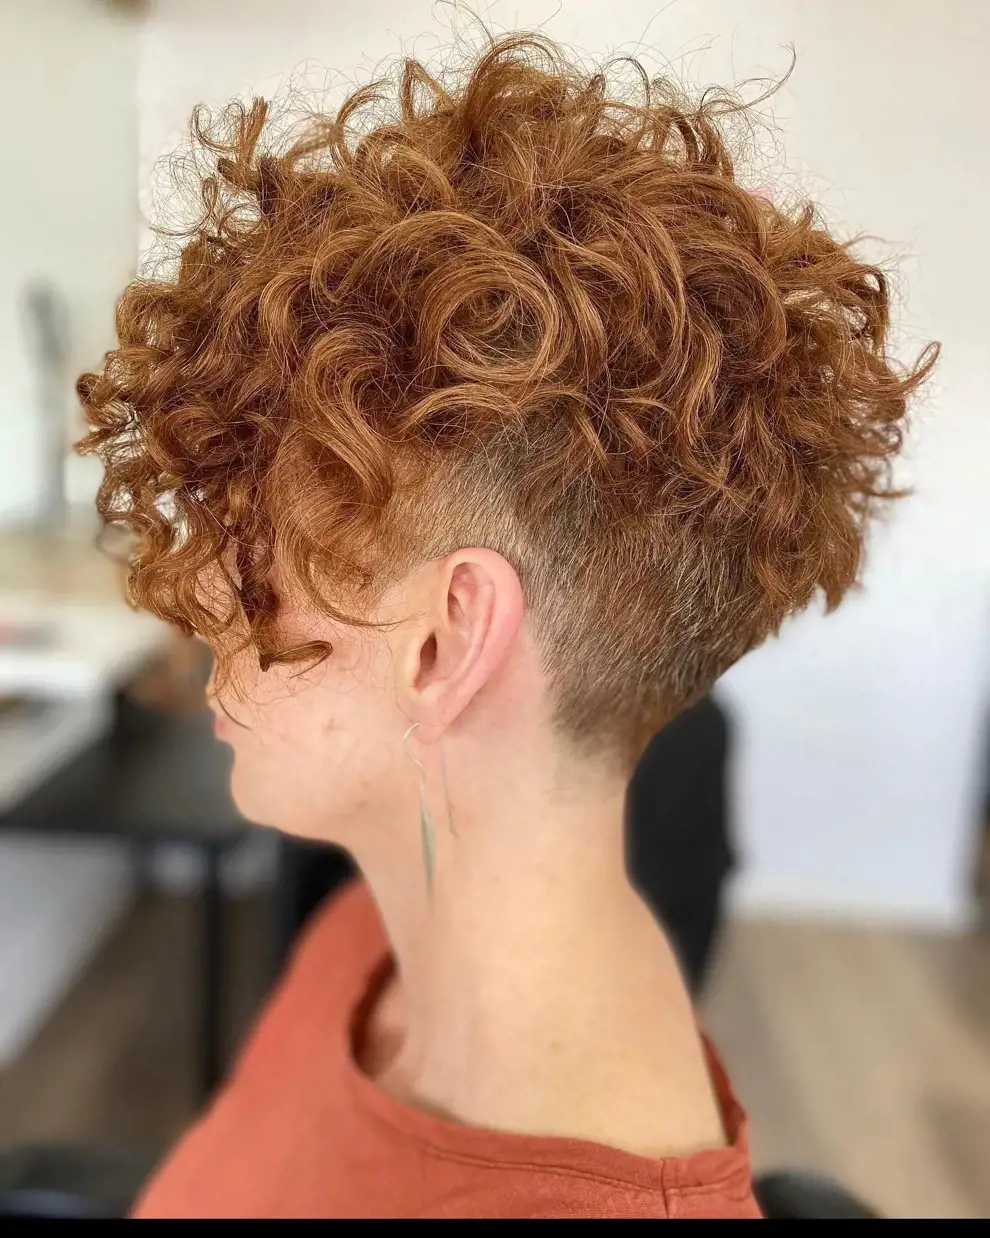 10 cortes de pelo rizado para el método curly: pixie